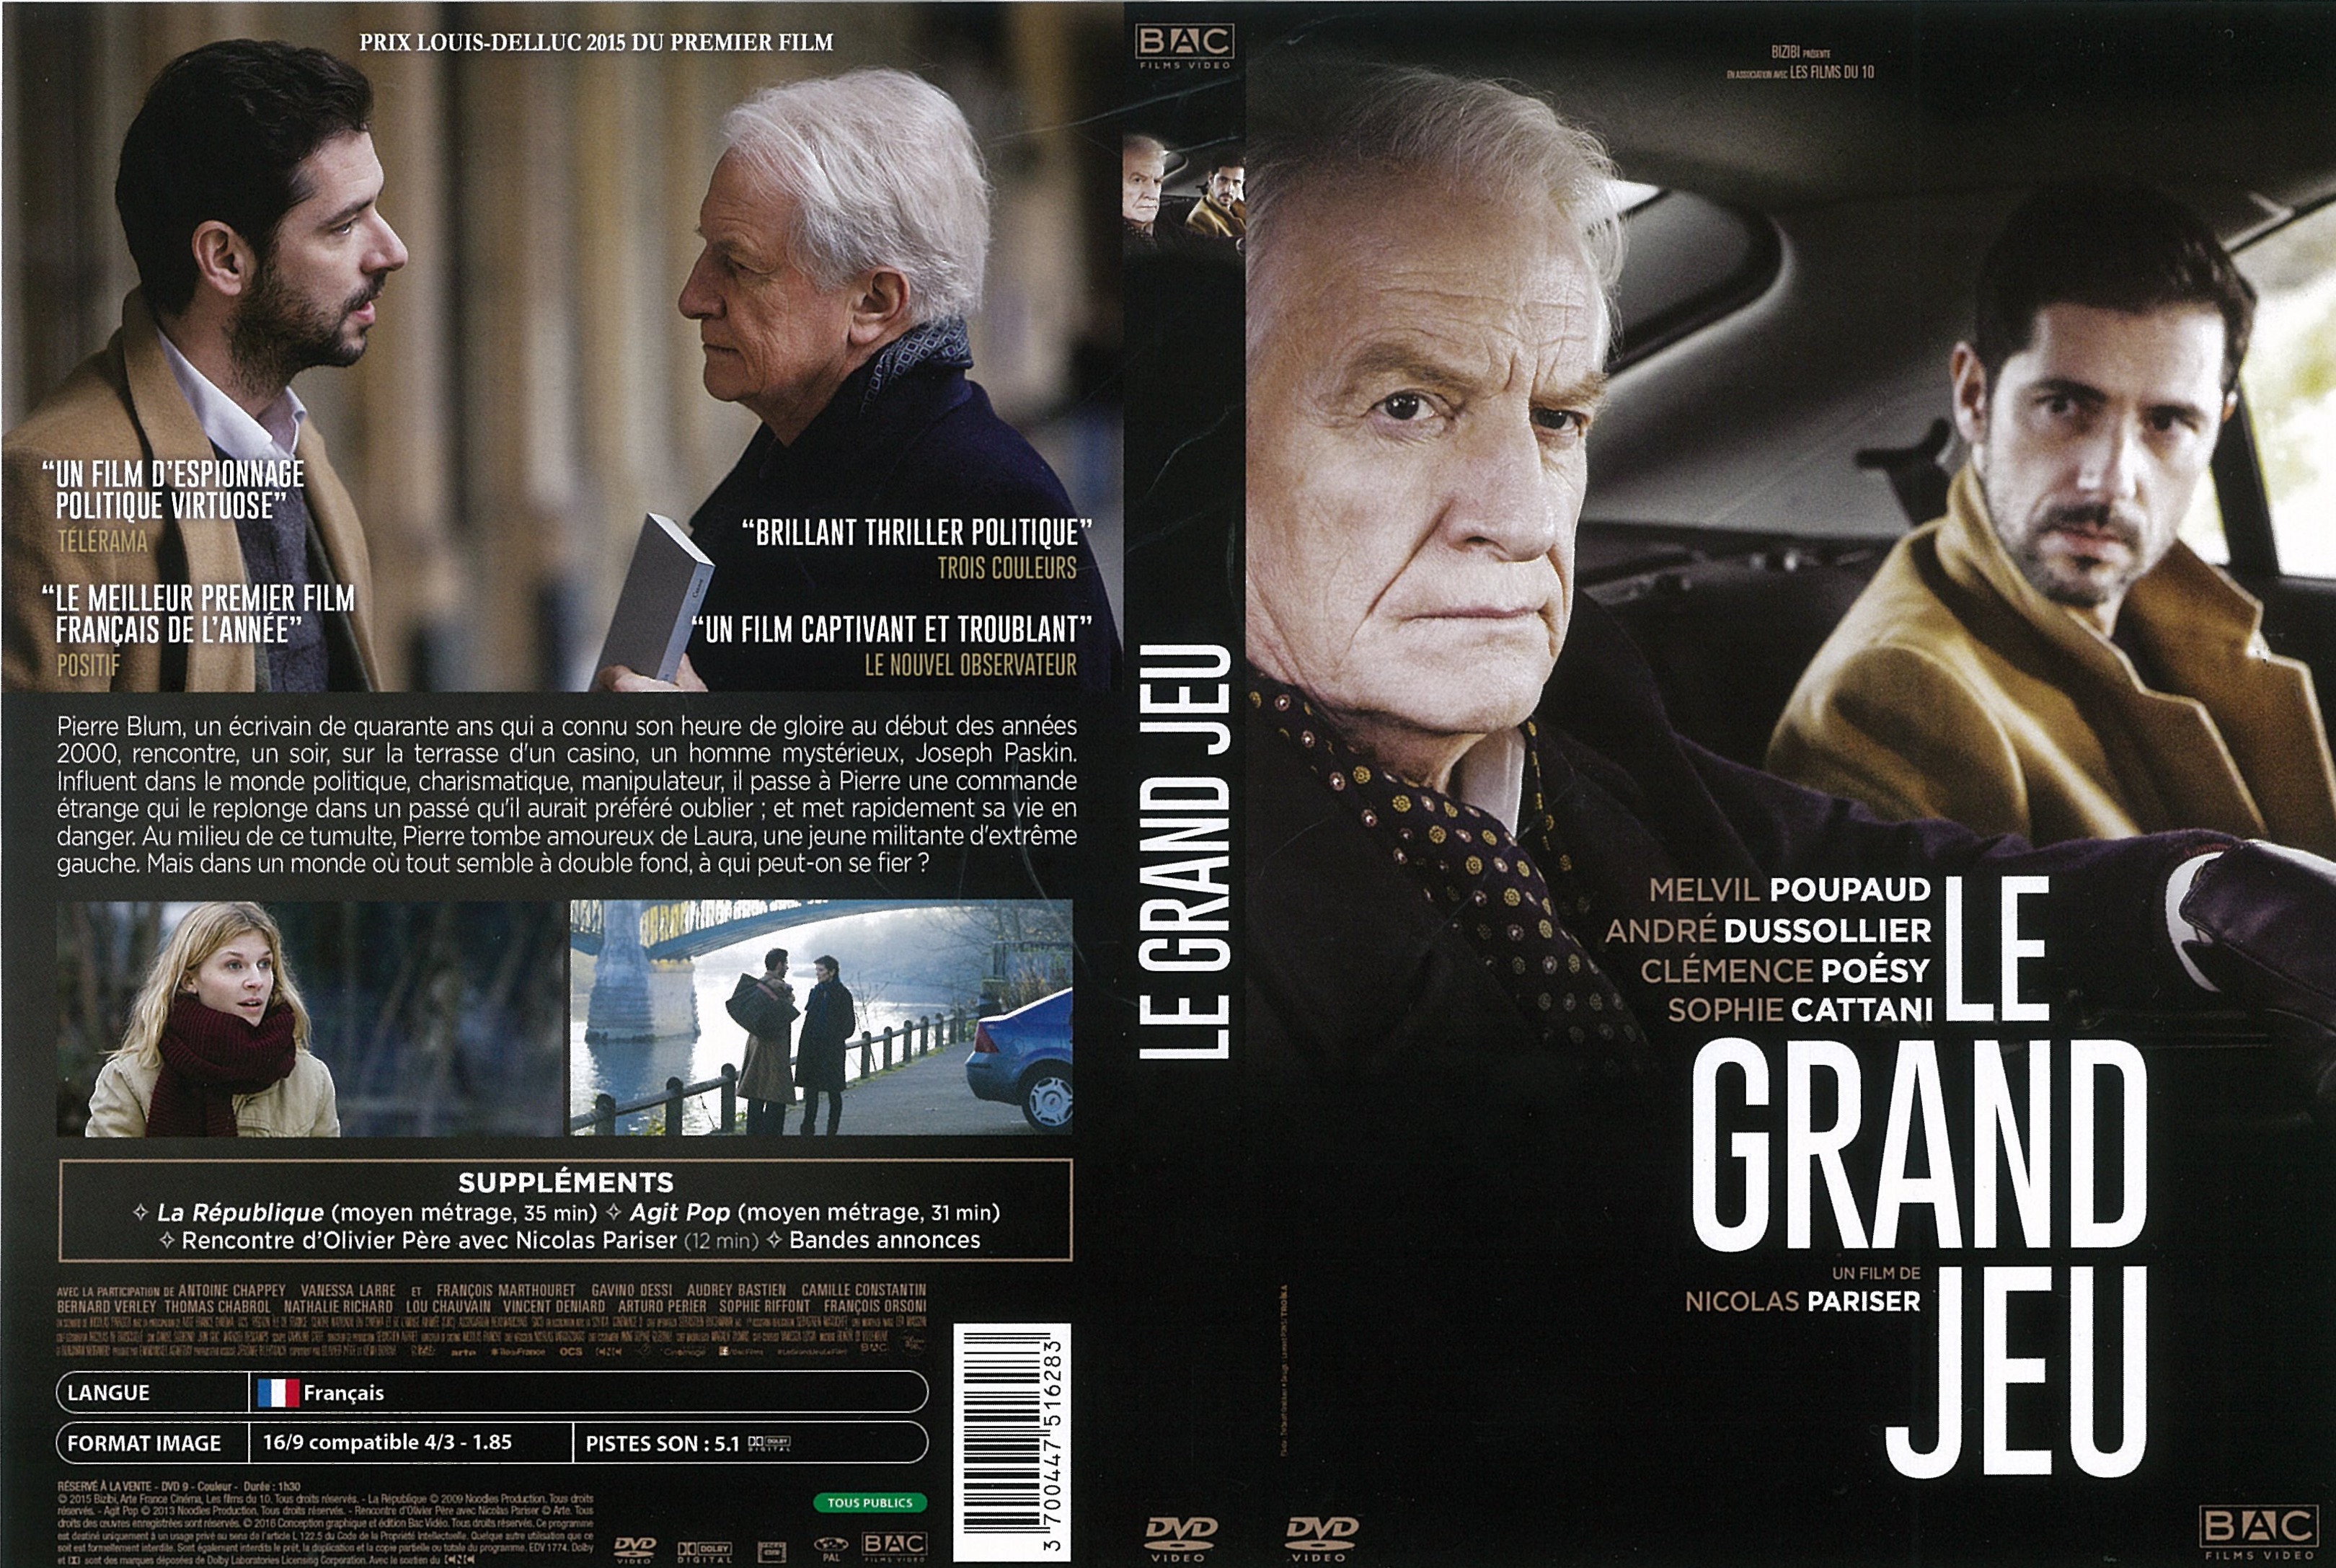 Jaquette DVD Le Grand jeu